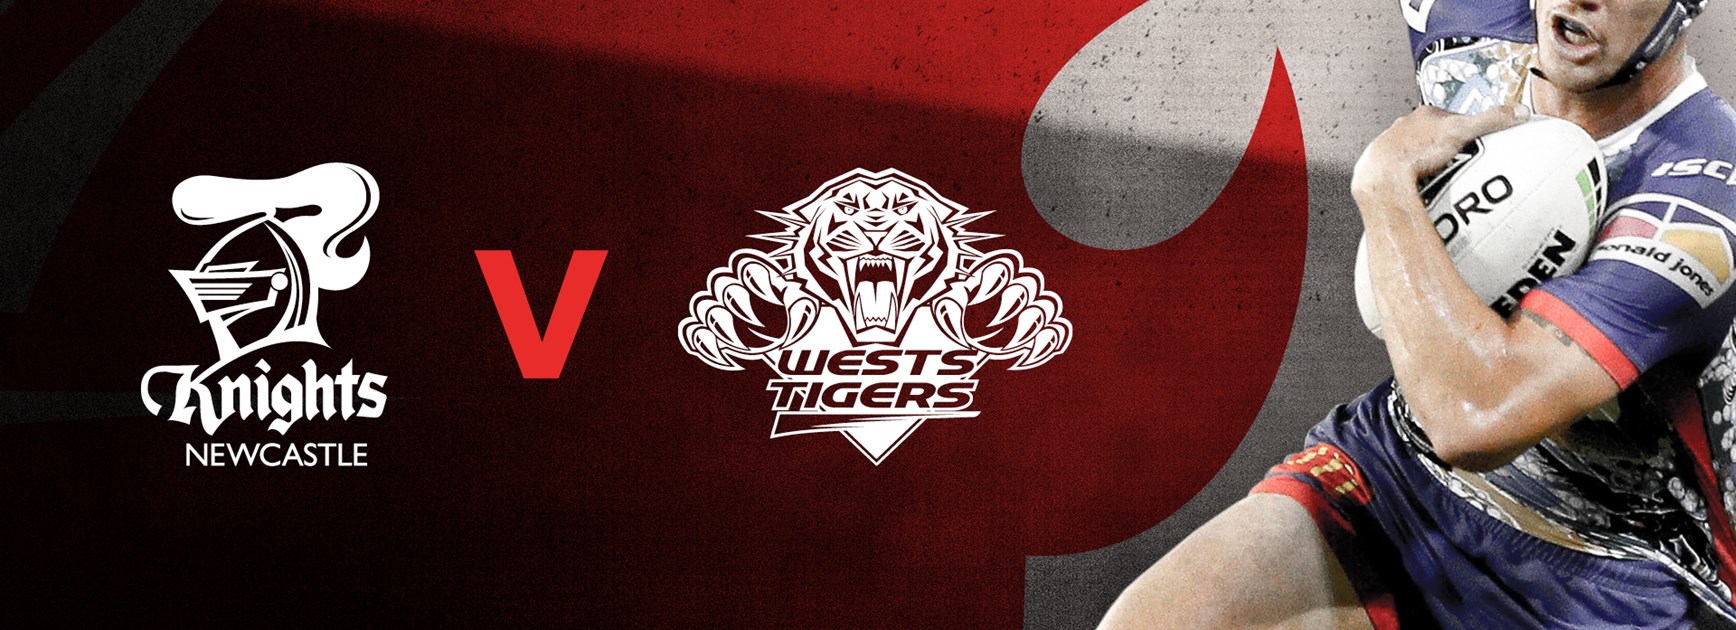 Knights v Tigers Round 19 NRL team